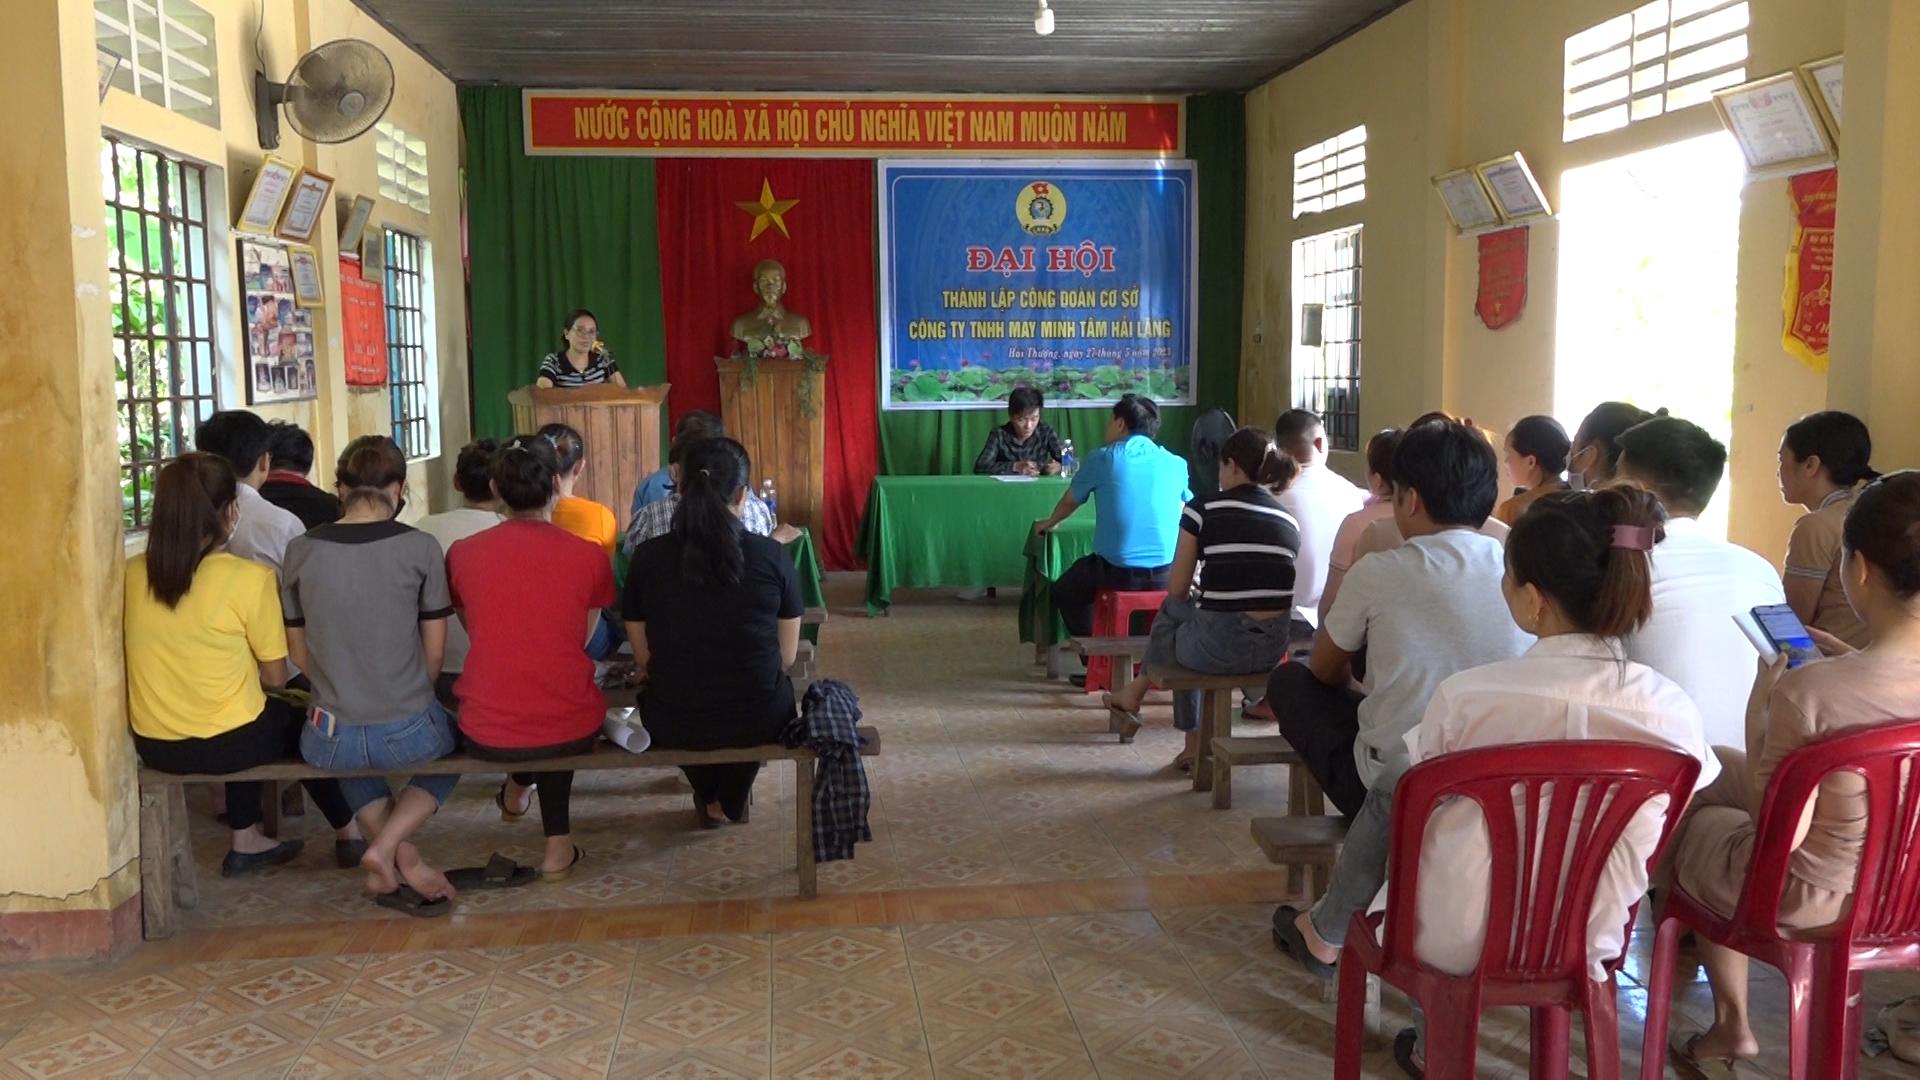 Hải Lăng: Thành lập Công đoàn cơ sở Công ty TNHH May Minh Tâm